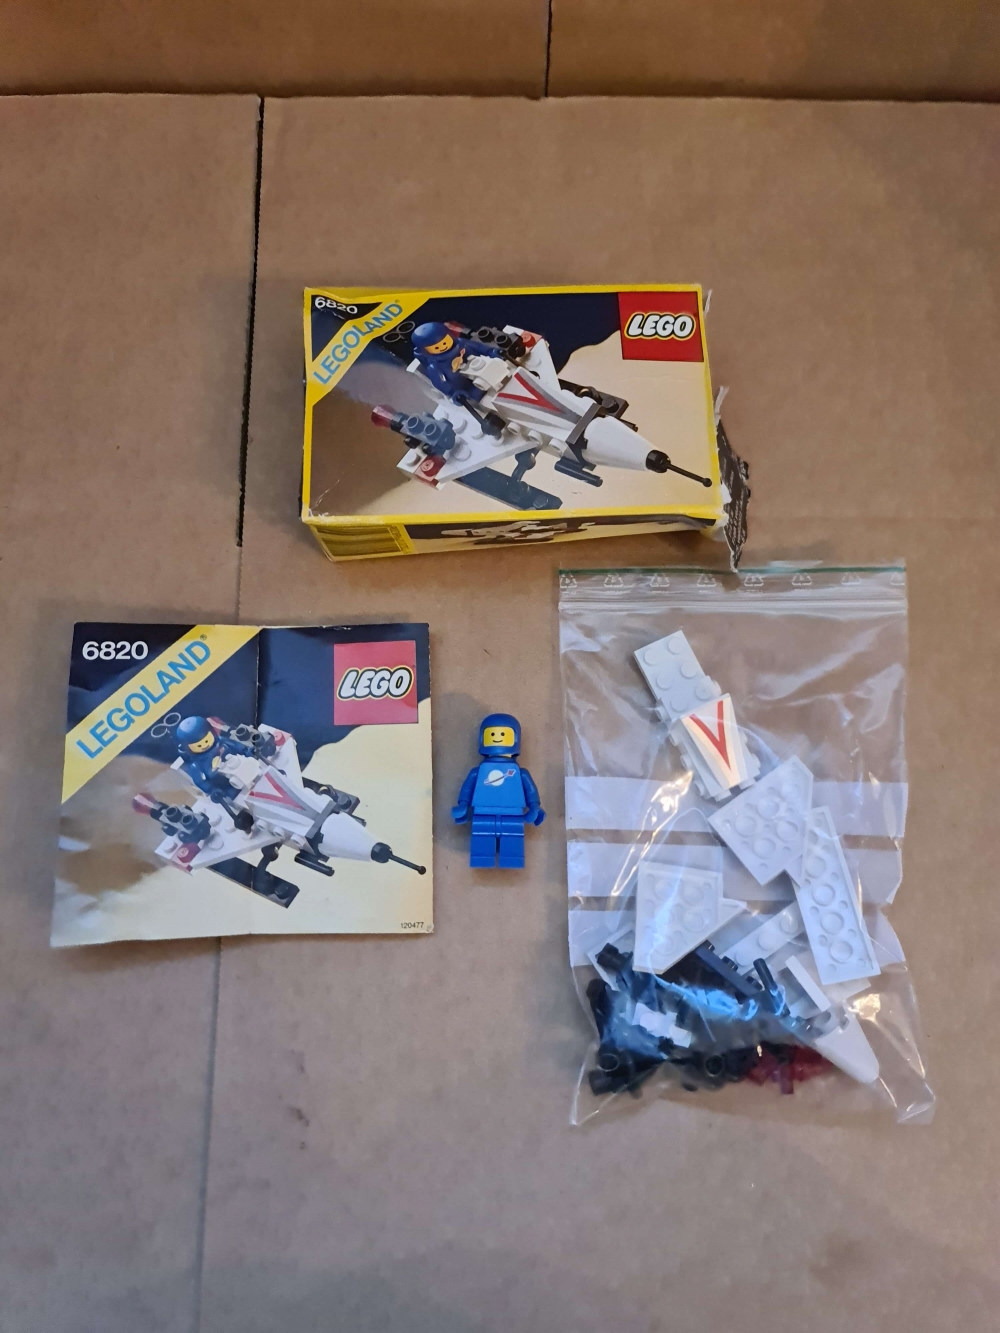 Sett 6820 fra Lego Classic Space serien.
Komplett med manual og eske.

